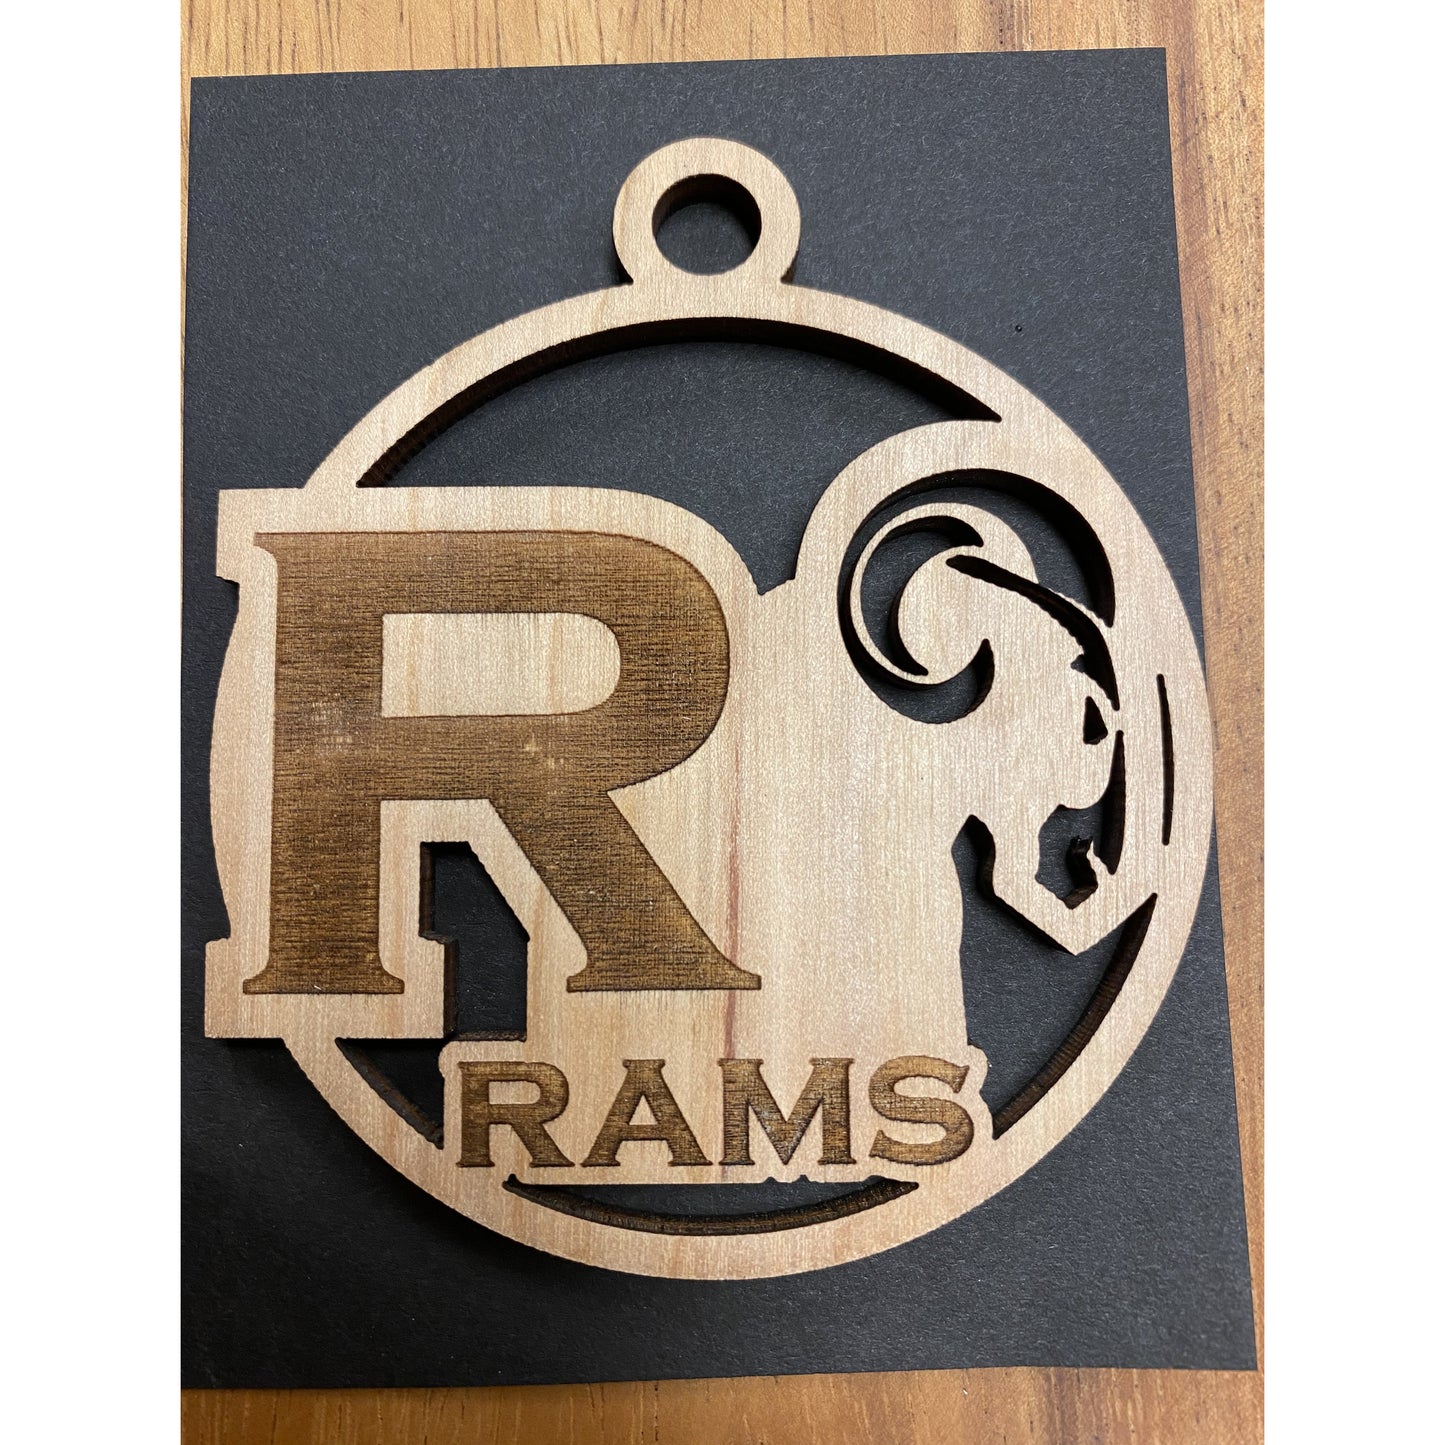 Radford Rams Keepsake